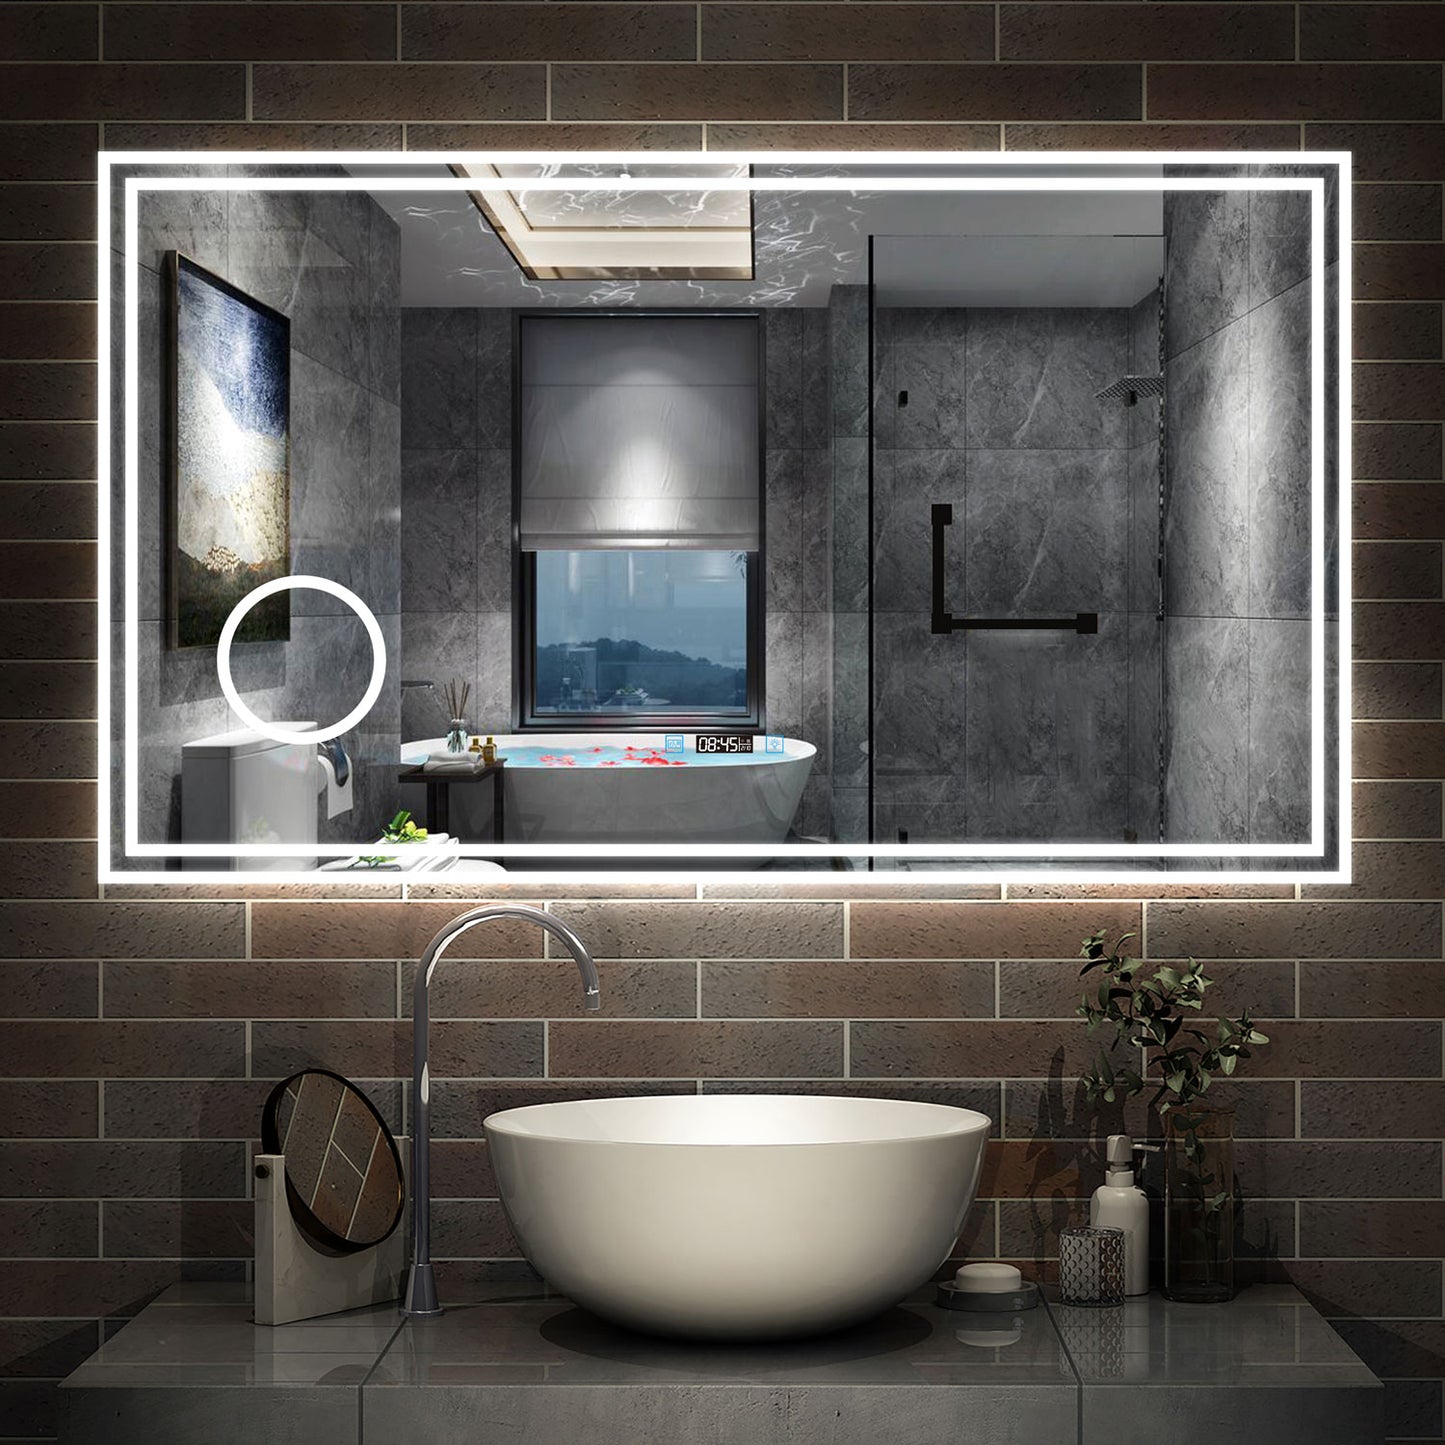 LED Badspiegel 70 bis 160 cm 2 Lichtfarbe 2700k/6000K Wandspiegel mit Bluetooth, Touch, Beschlagfrei,IP44 Kalt/Warmweiß energiesparend